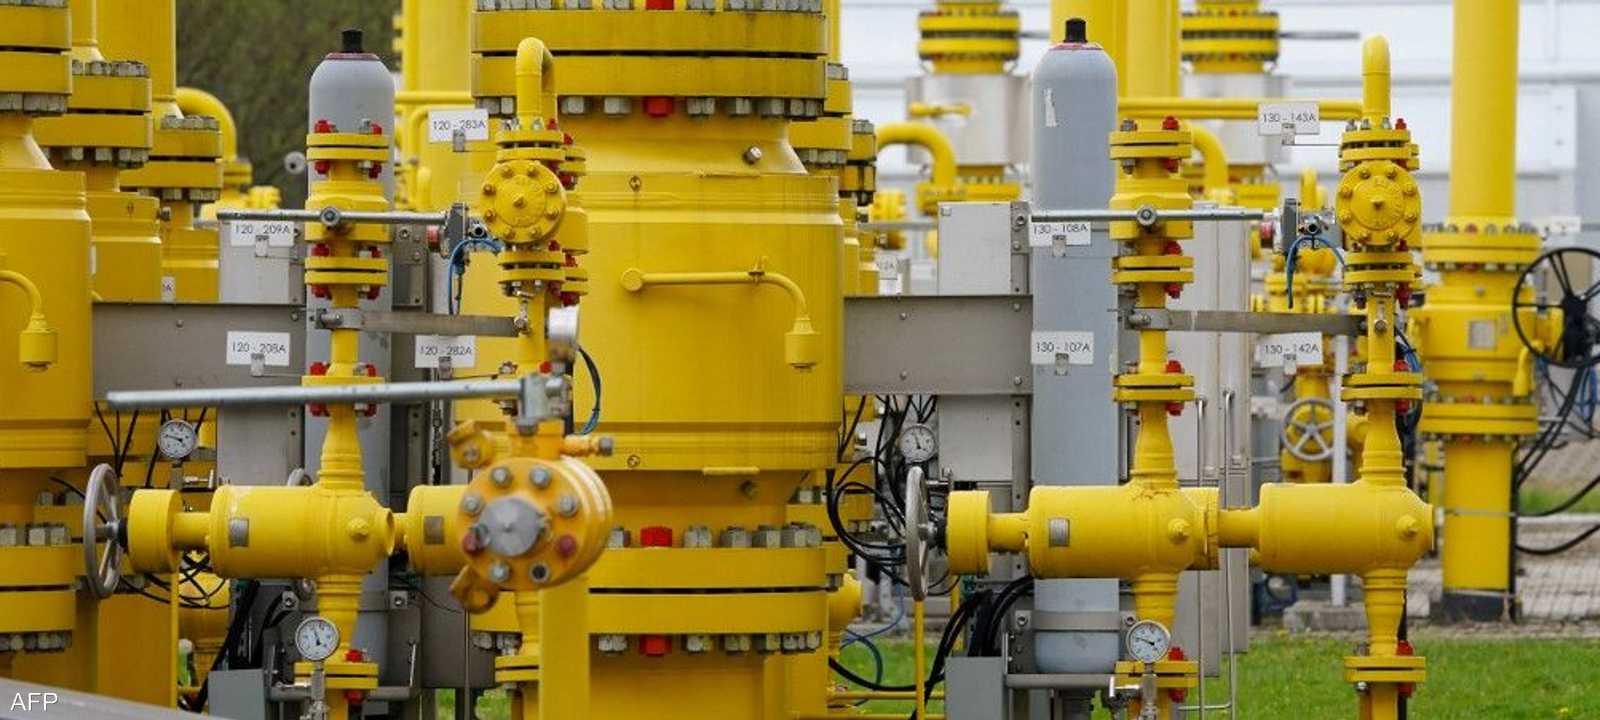 روسيا طالبت الدول "غير الصديقة" بأن تدفع بالروبل مقابل الغاز